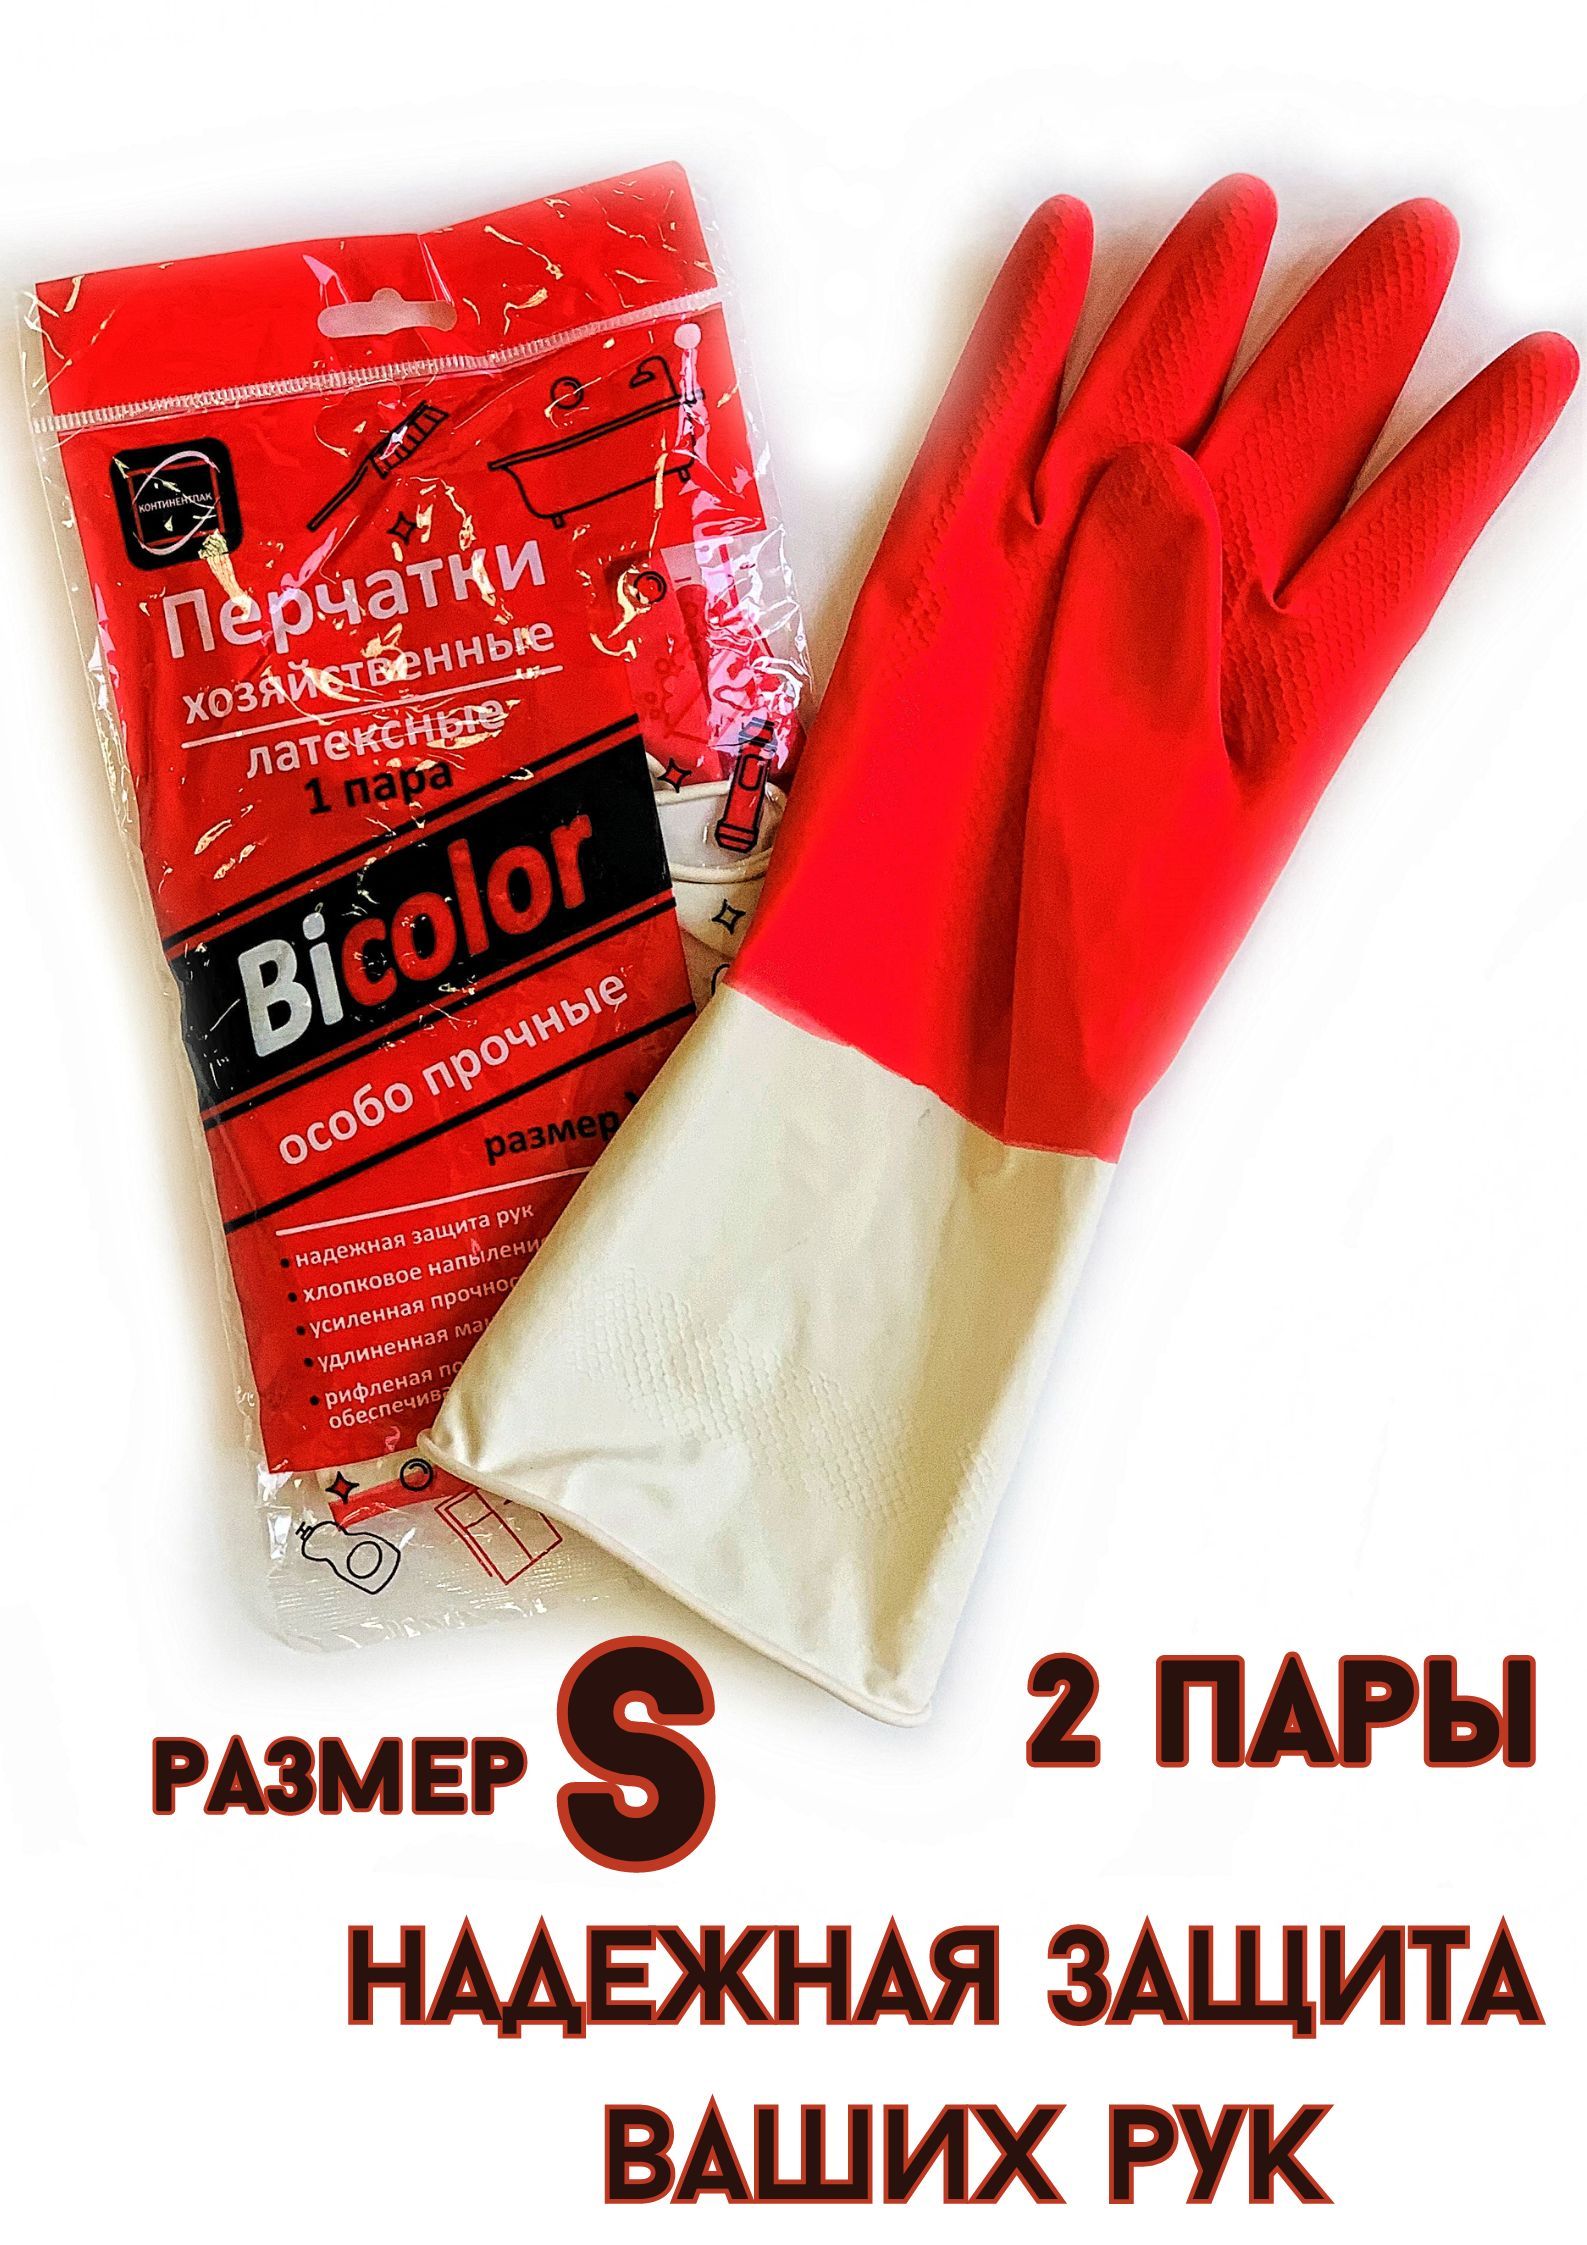 Перчатки БытСервис хозяйственные резиновые S особо прочные красно-белые 2 пары